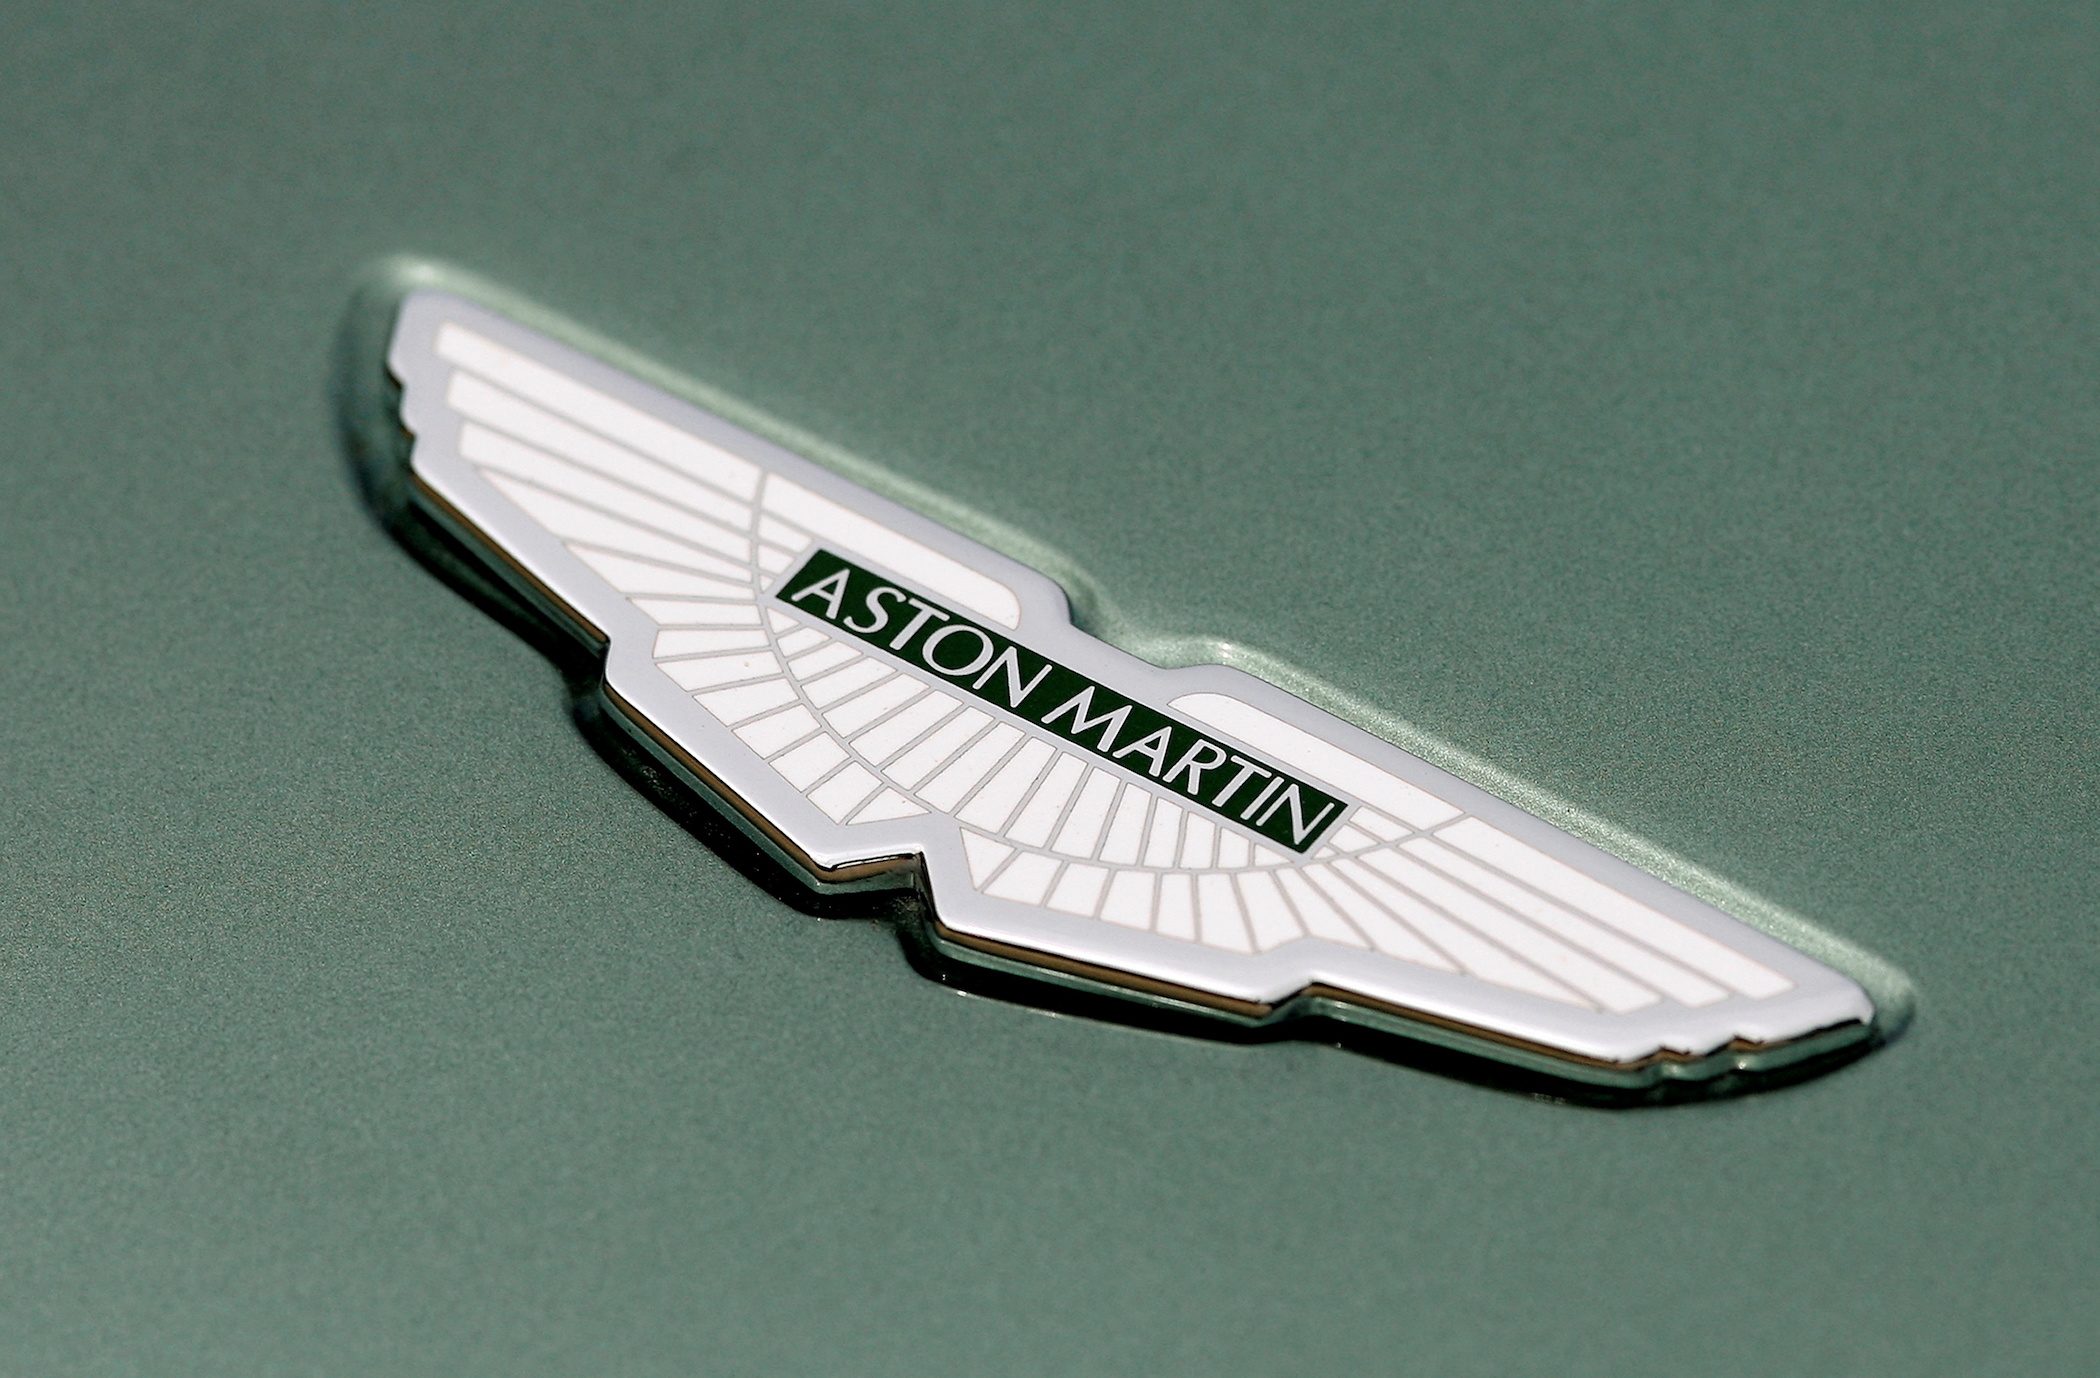 Jaguar, Aston Martin pause Russian deliveries over sanctions